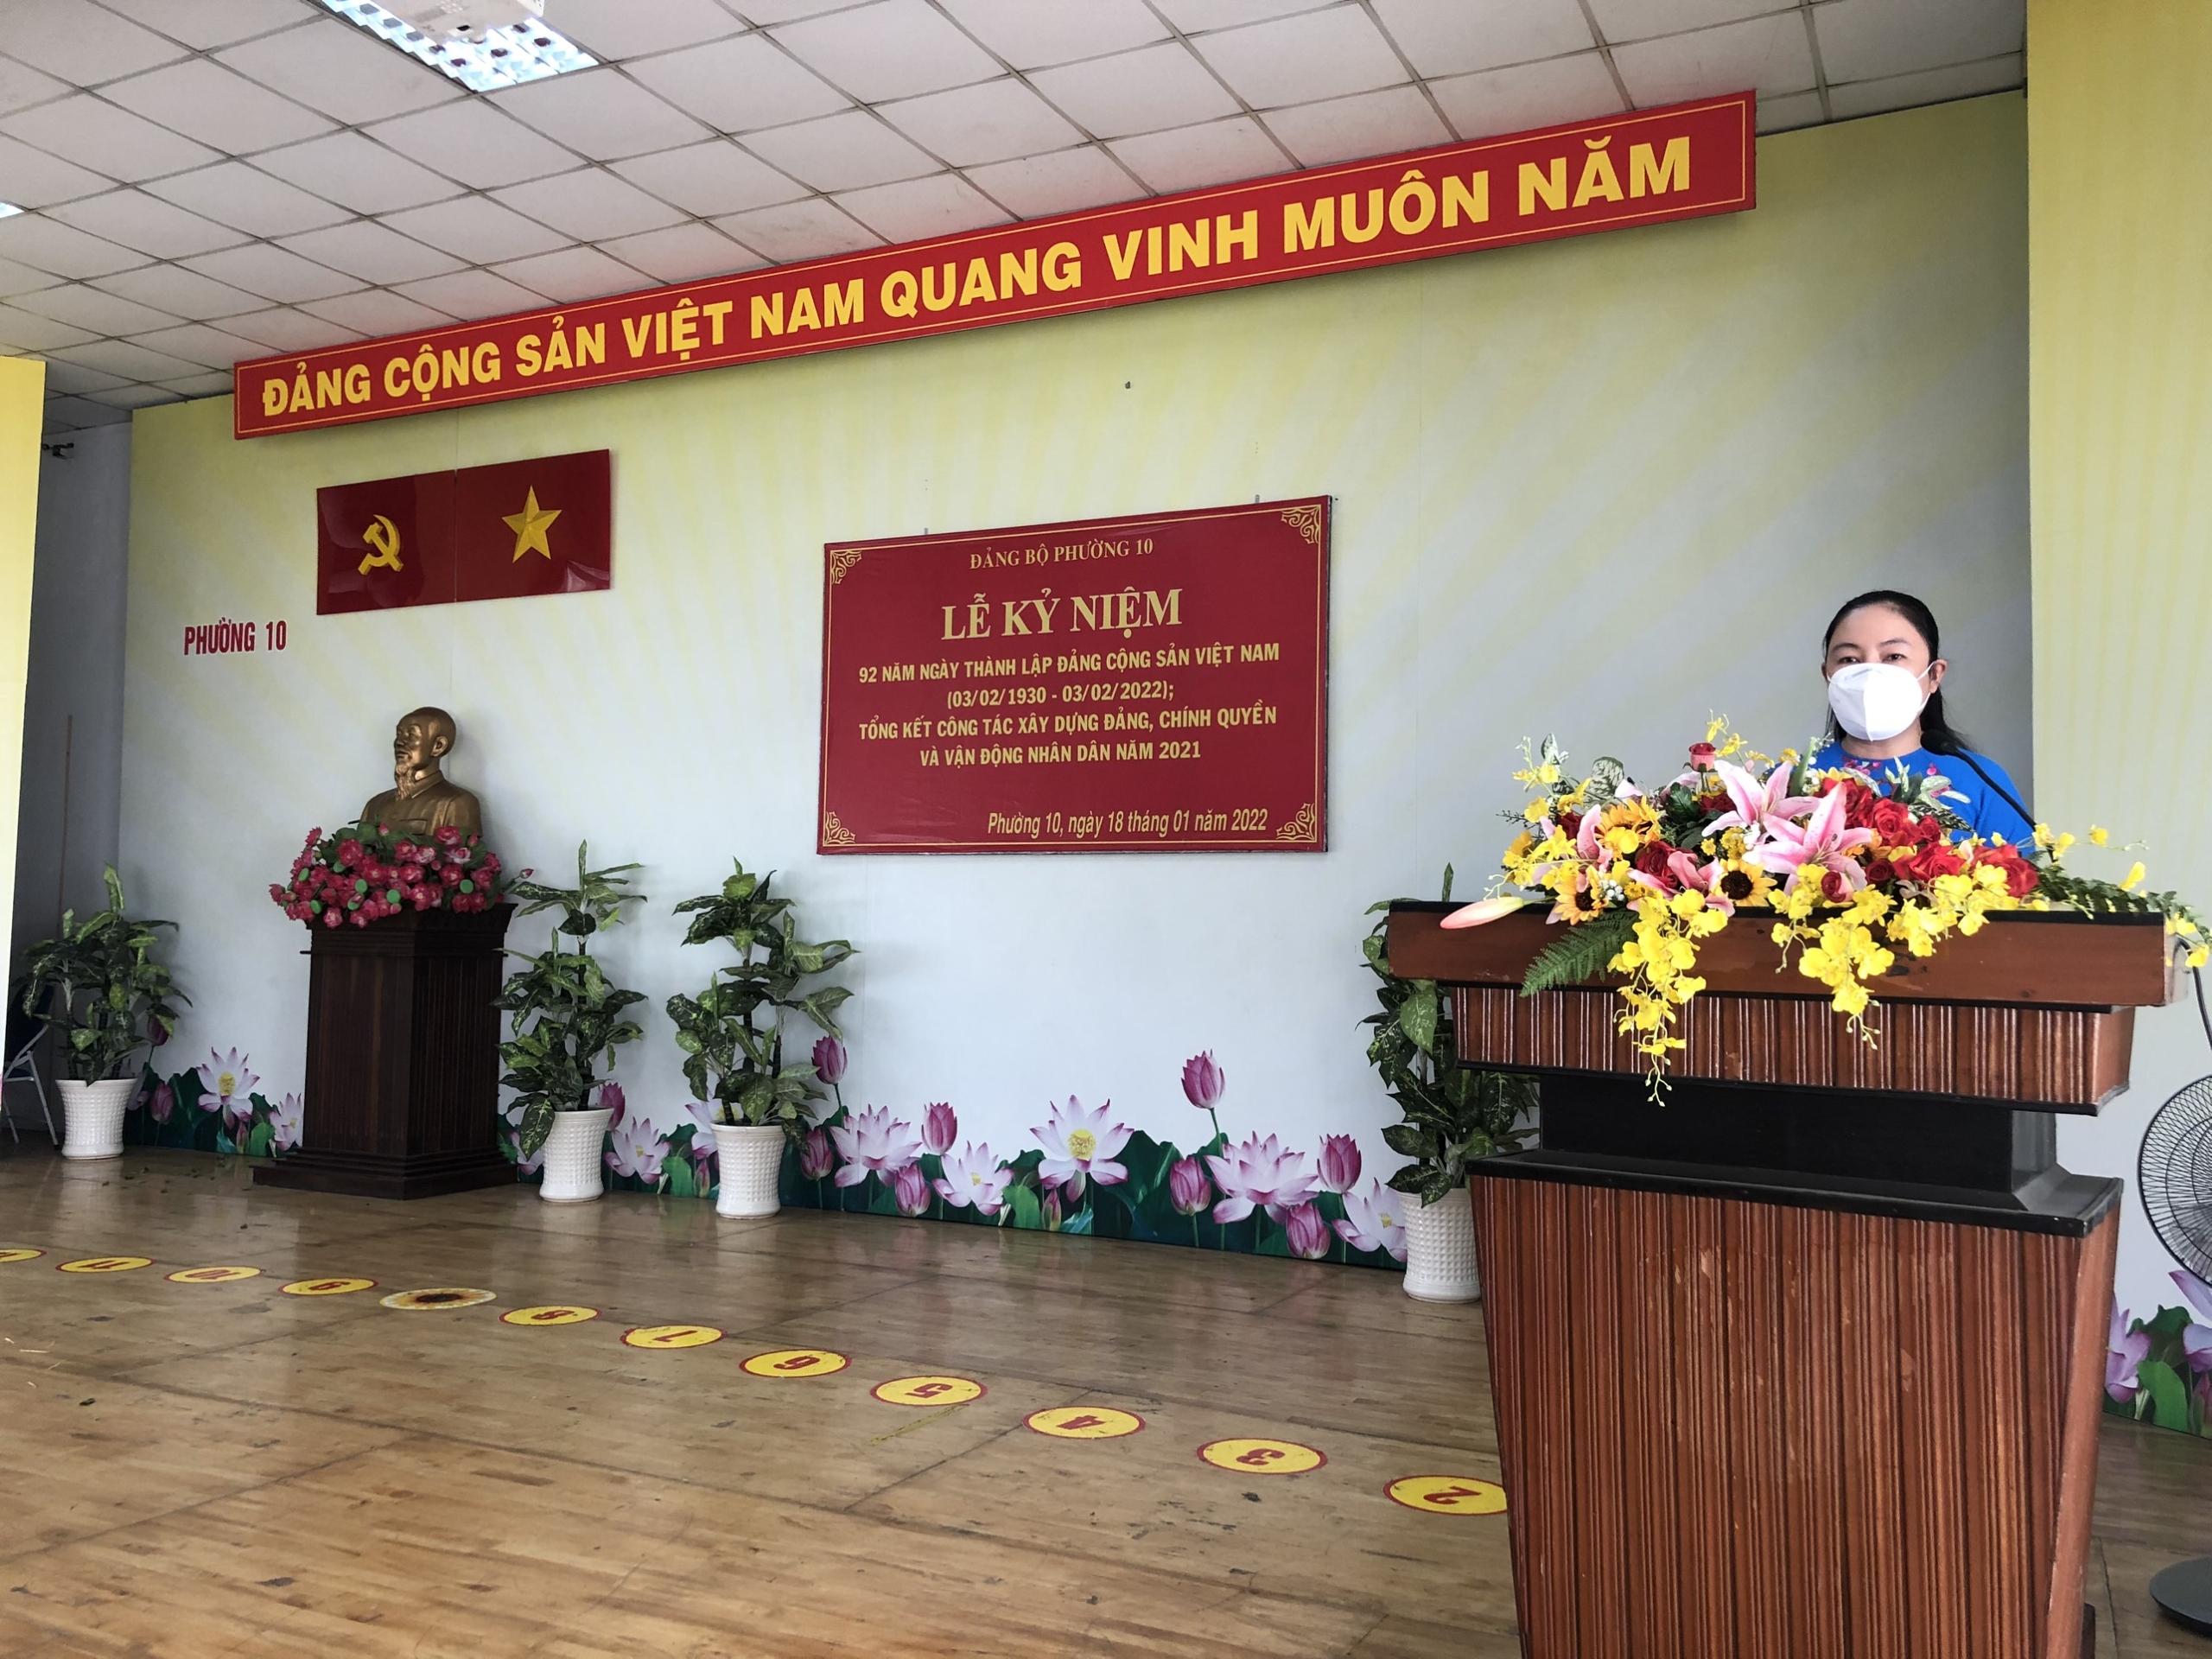 Lễ kỷ niệm 92 năm ngày thành lập Đảng Cộng sản Việt Nam (03/02/1930 – 03/02/2022); tổng kết công tác xây dựng Đảng, chính quyền và vận động Nhân dân năm 2021.